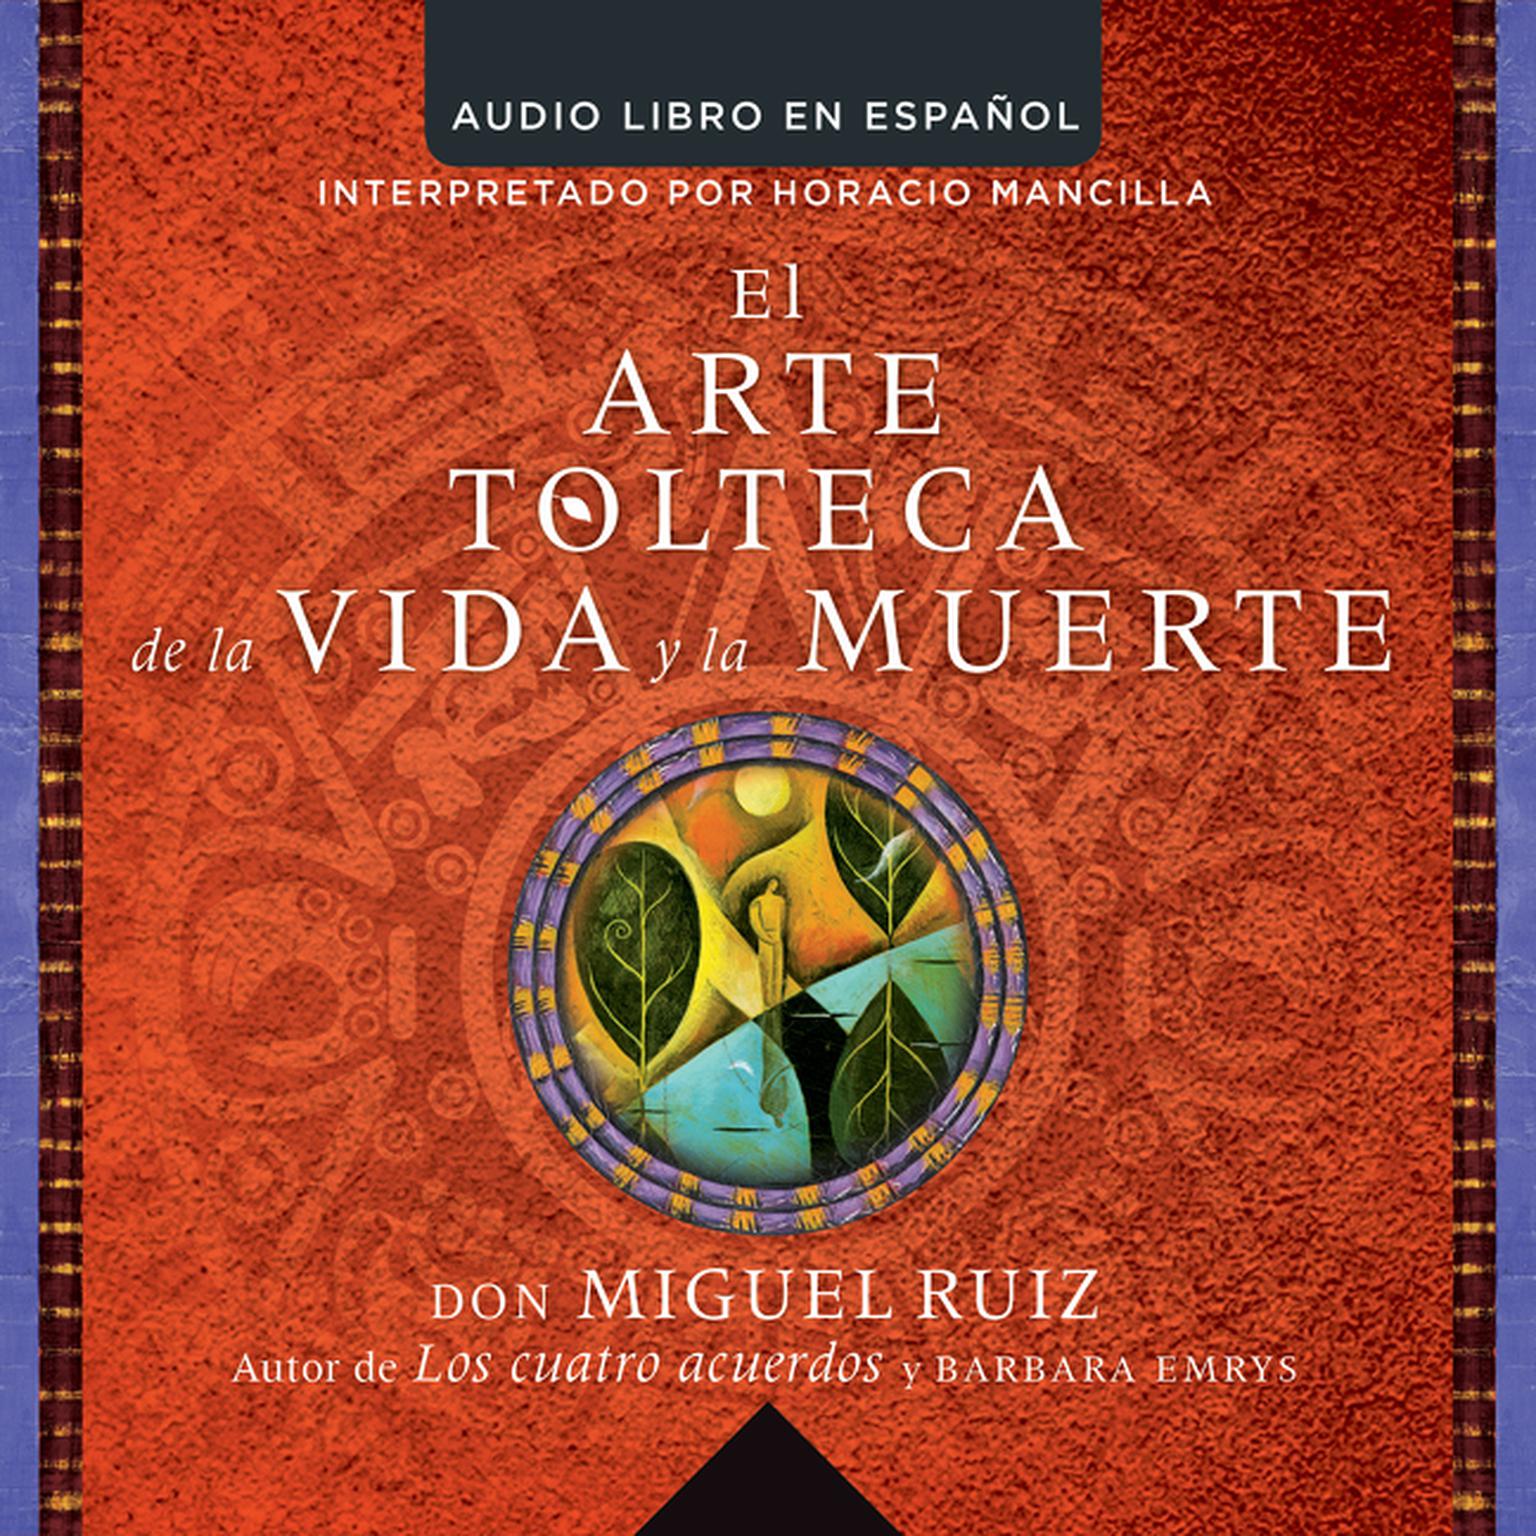 arte tolteca de la vida y la muerte (The Toltec Art of Life and Death - Spanish Audiobook, by Don Miguel Ruiz